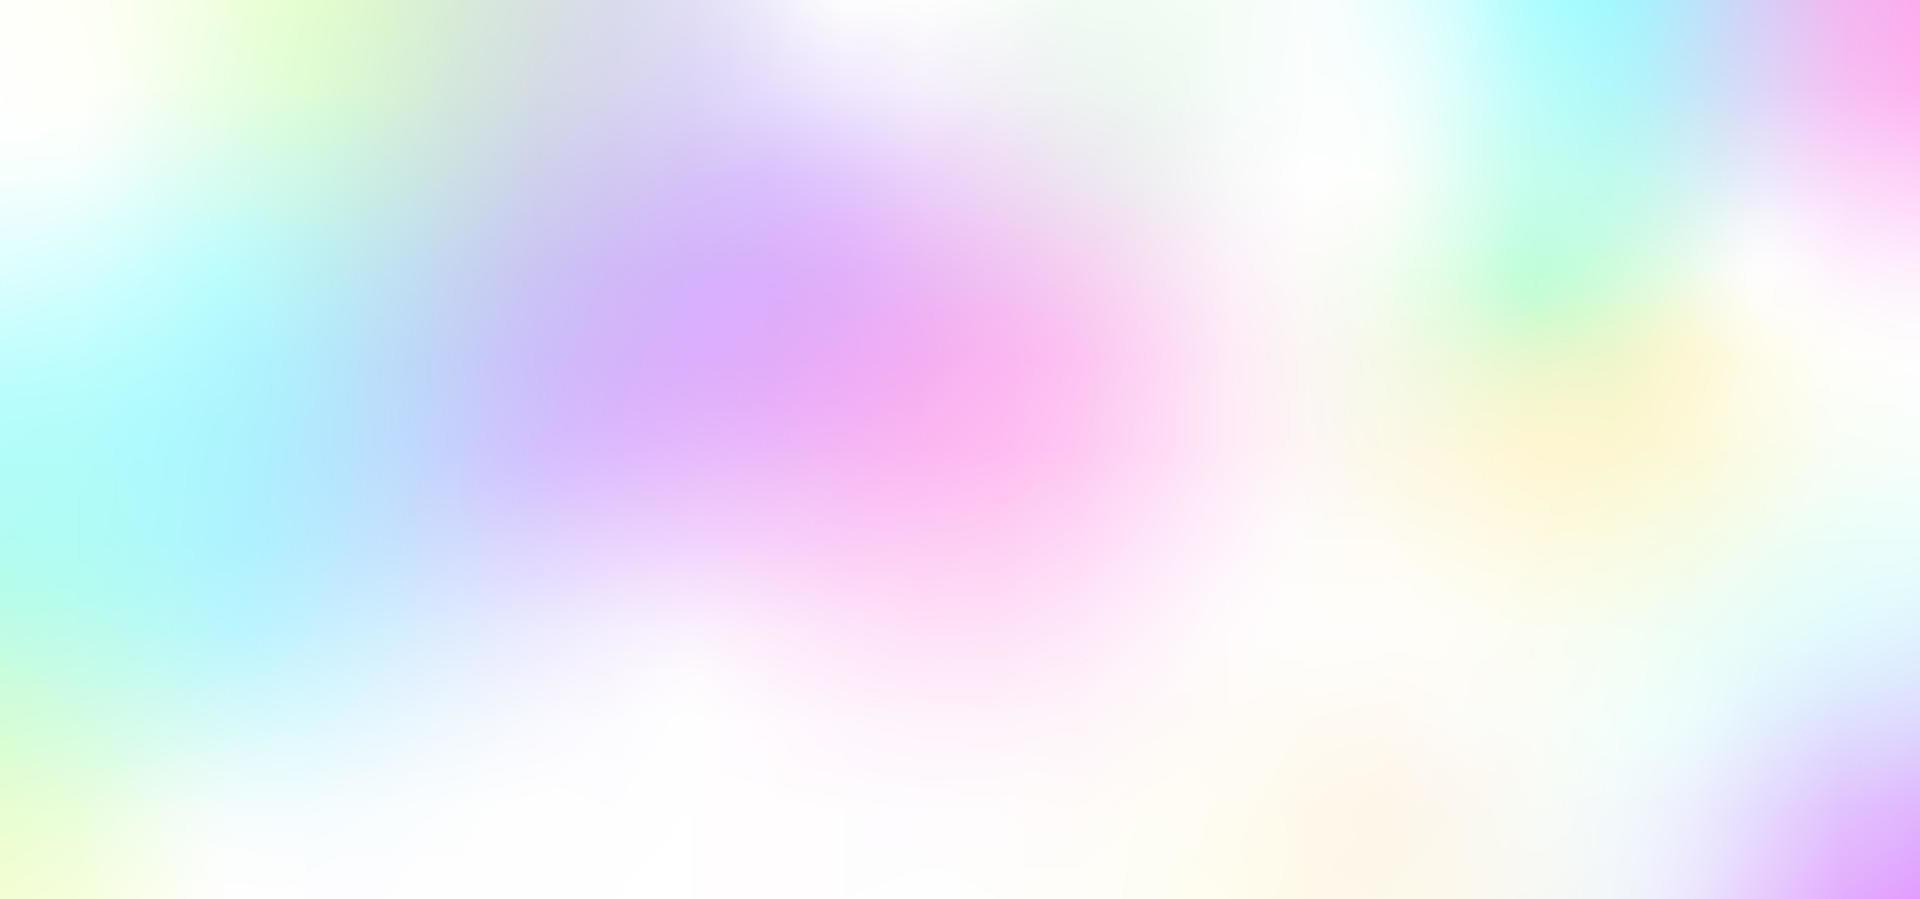  Farbverlauf Pastell Hintergrundbild 1920x899. unscharfer schillernder hintergrund von sanfter farbe. mehrfarbiger Farbverlauf Pastell lila, pink und blau. vektorillustration von glühenden fließenden stellen. 13435424 Vektor Kunst bei Vecteezy